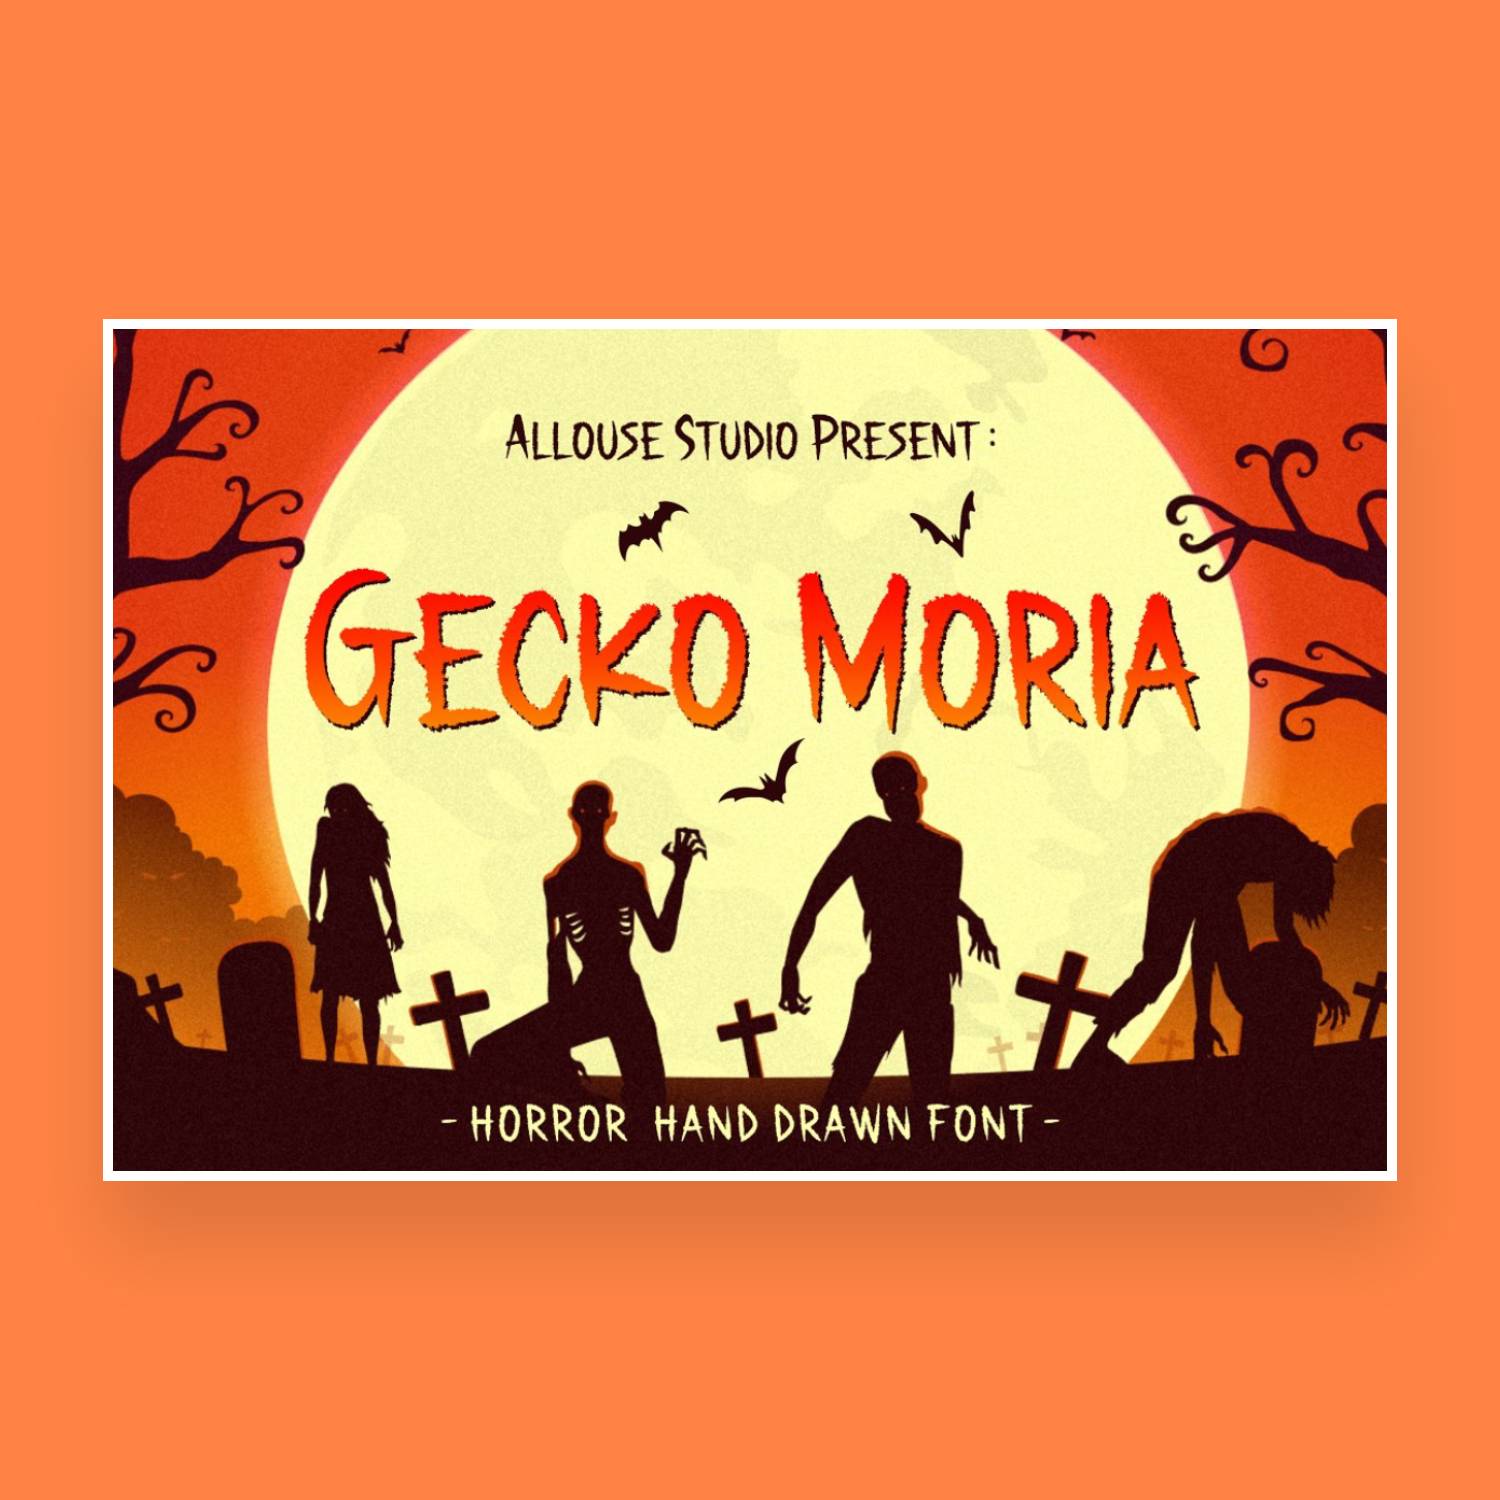 Gecko moria font main cover.